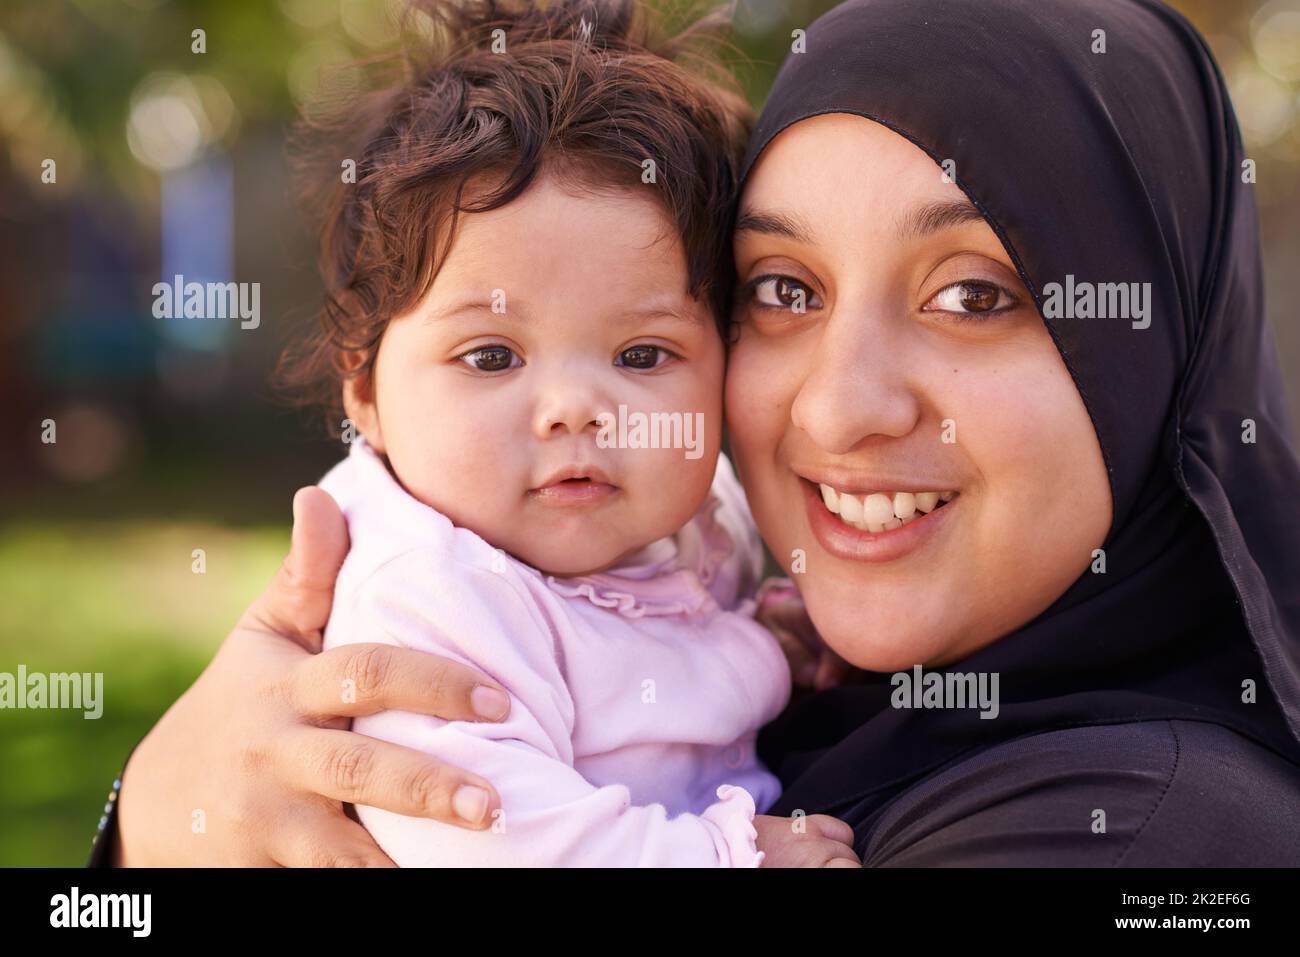 Shes mon petit amour. Prise de vue d'une mère musulmane et de sa petite fille. Banque D'Images